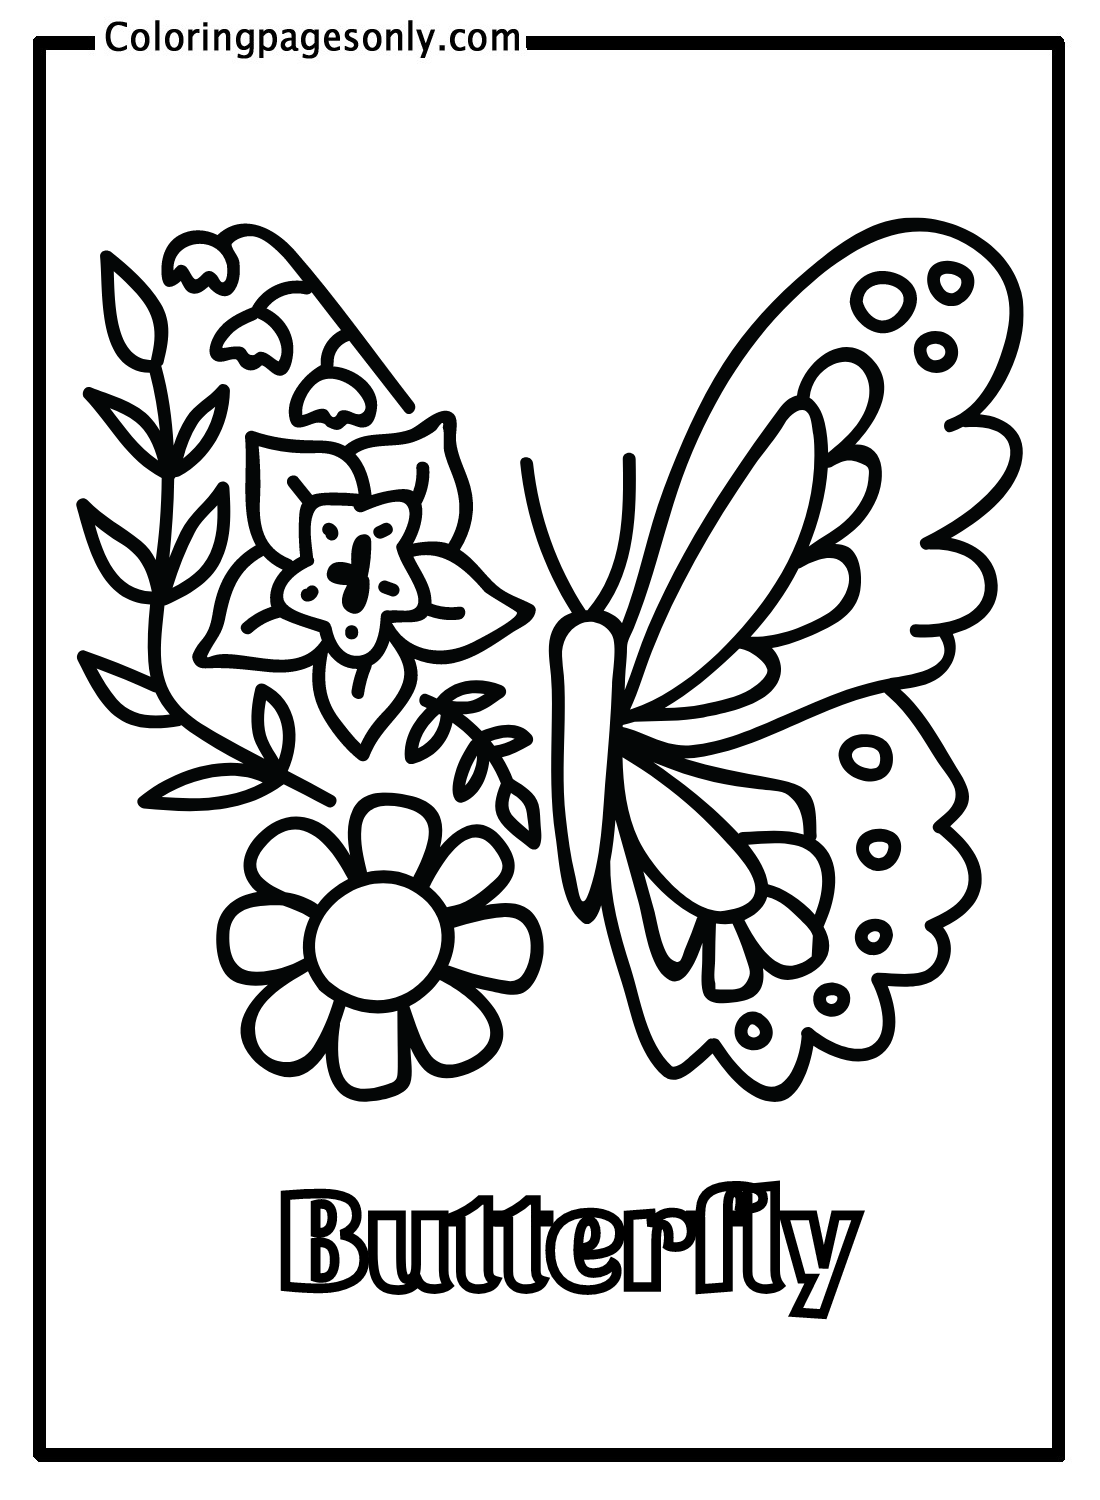 Mariposa con flores de mariposa.